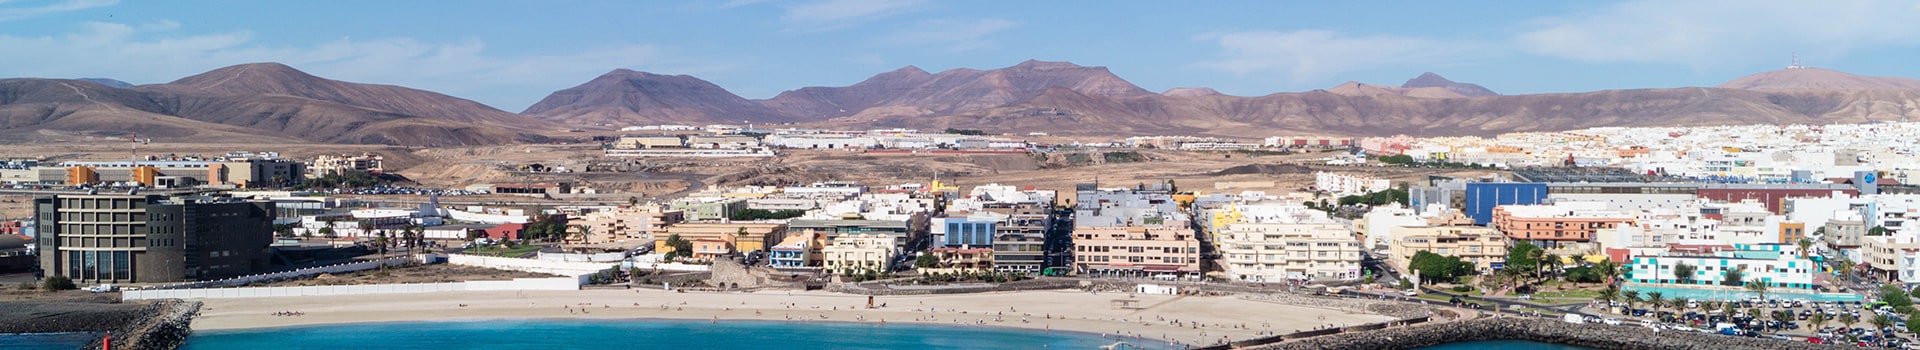 Funchal - Fuerteventura